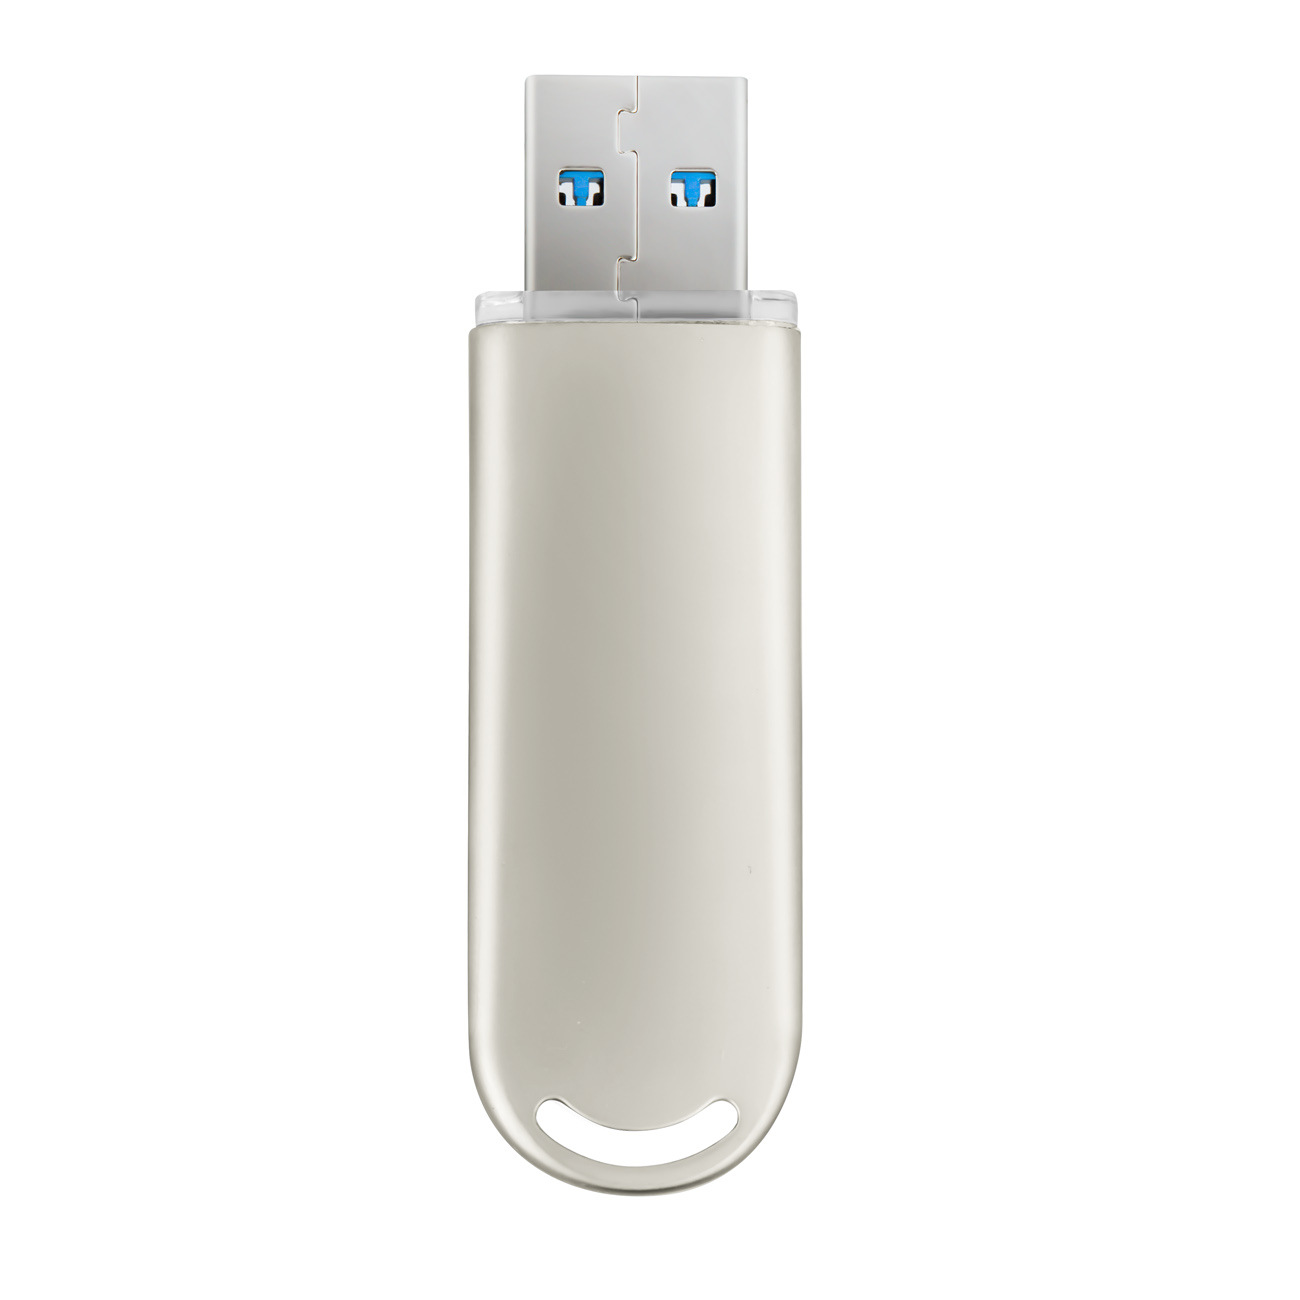 厂家供应指纹识别加密U盘USB3.0高速金属外壳可定制防丢商务礼品